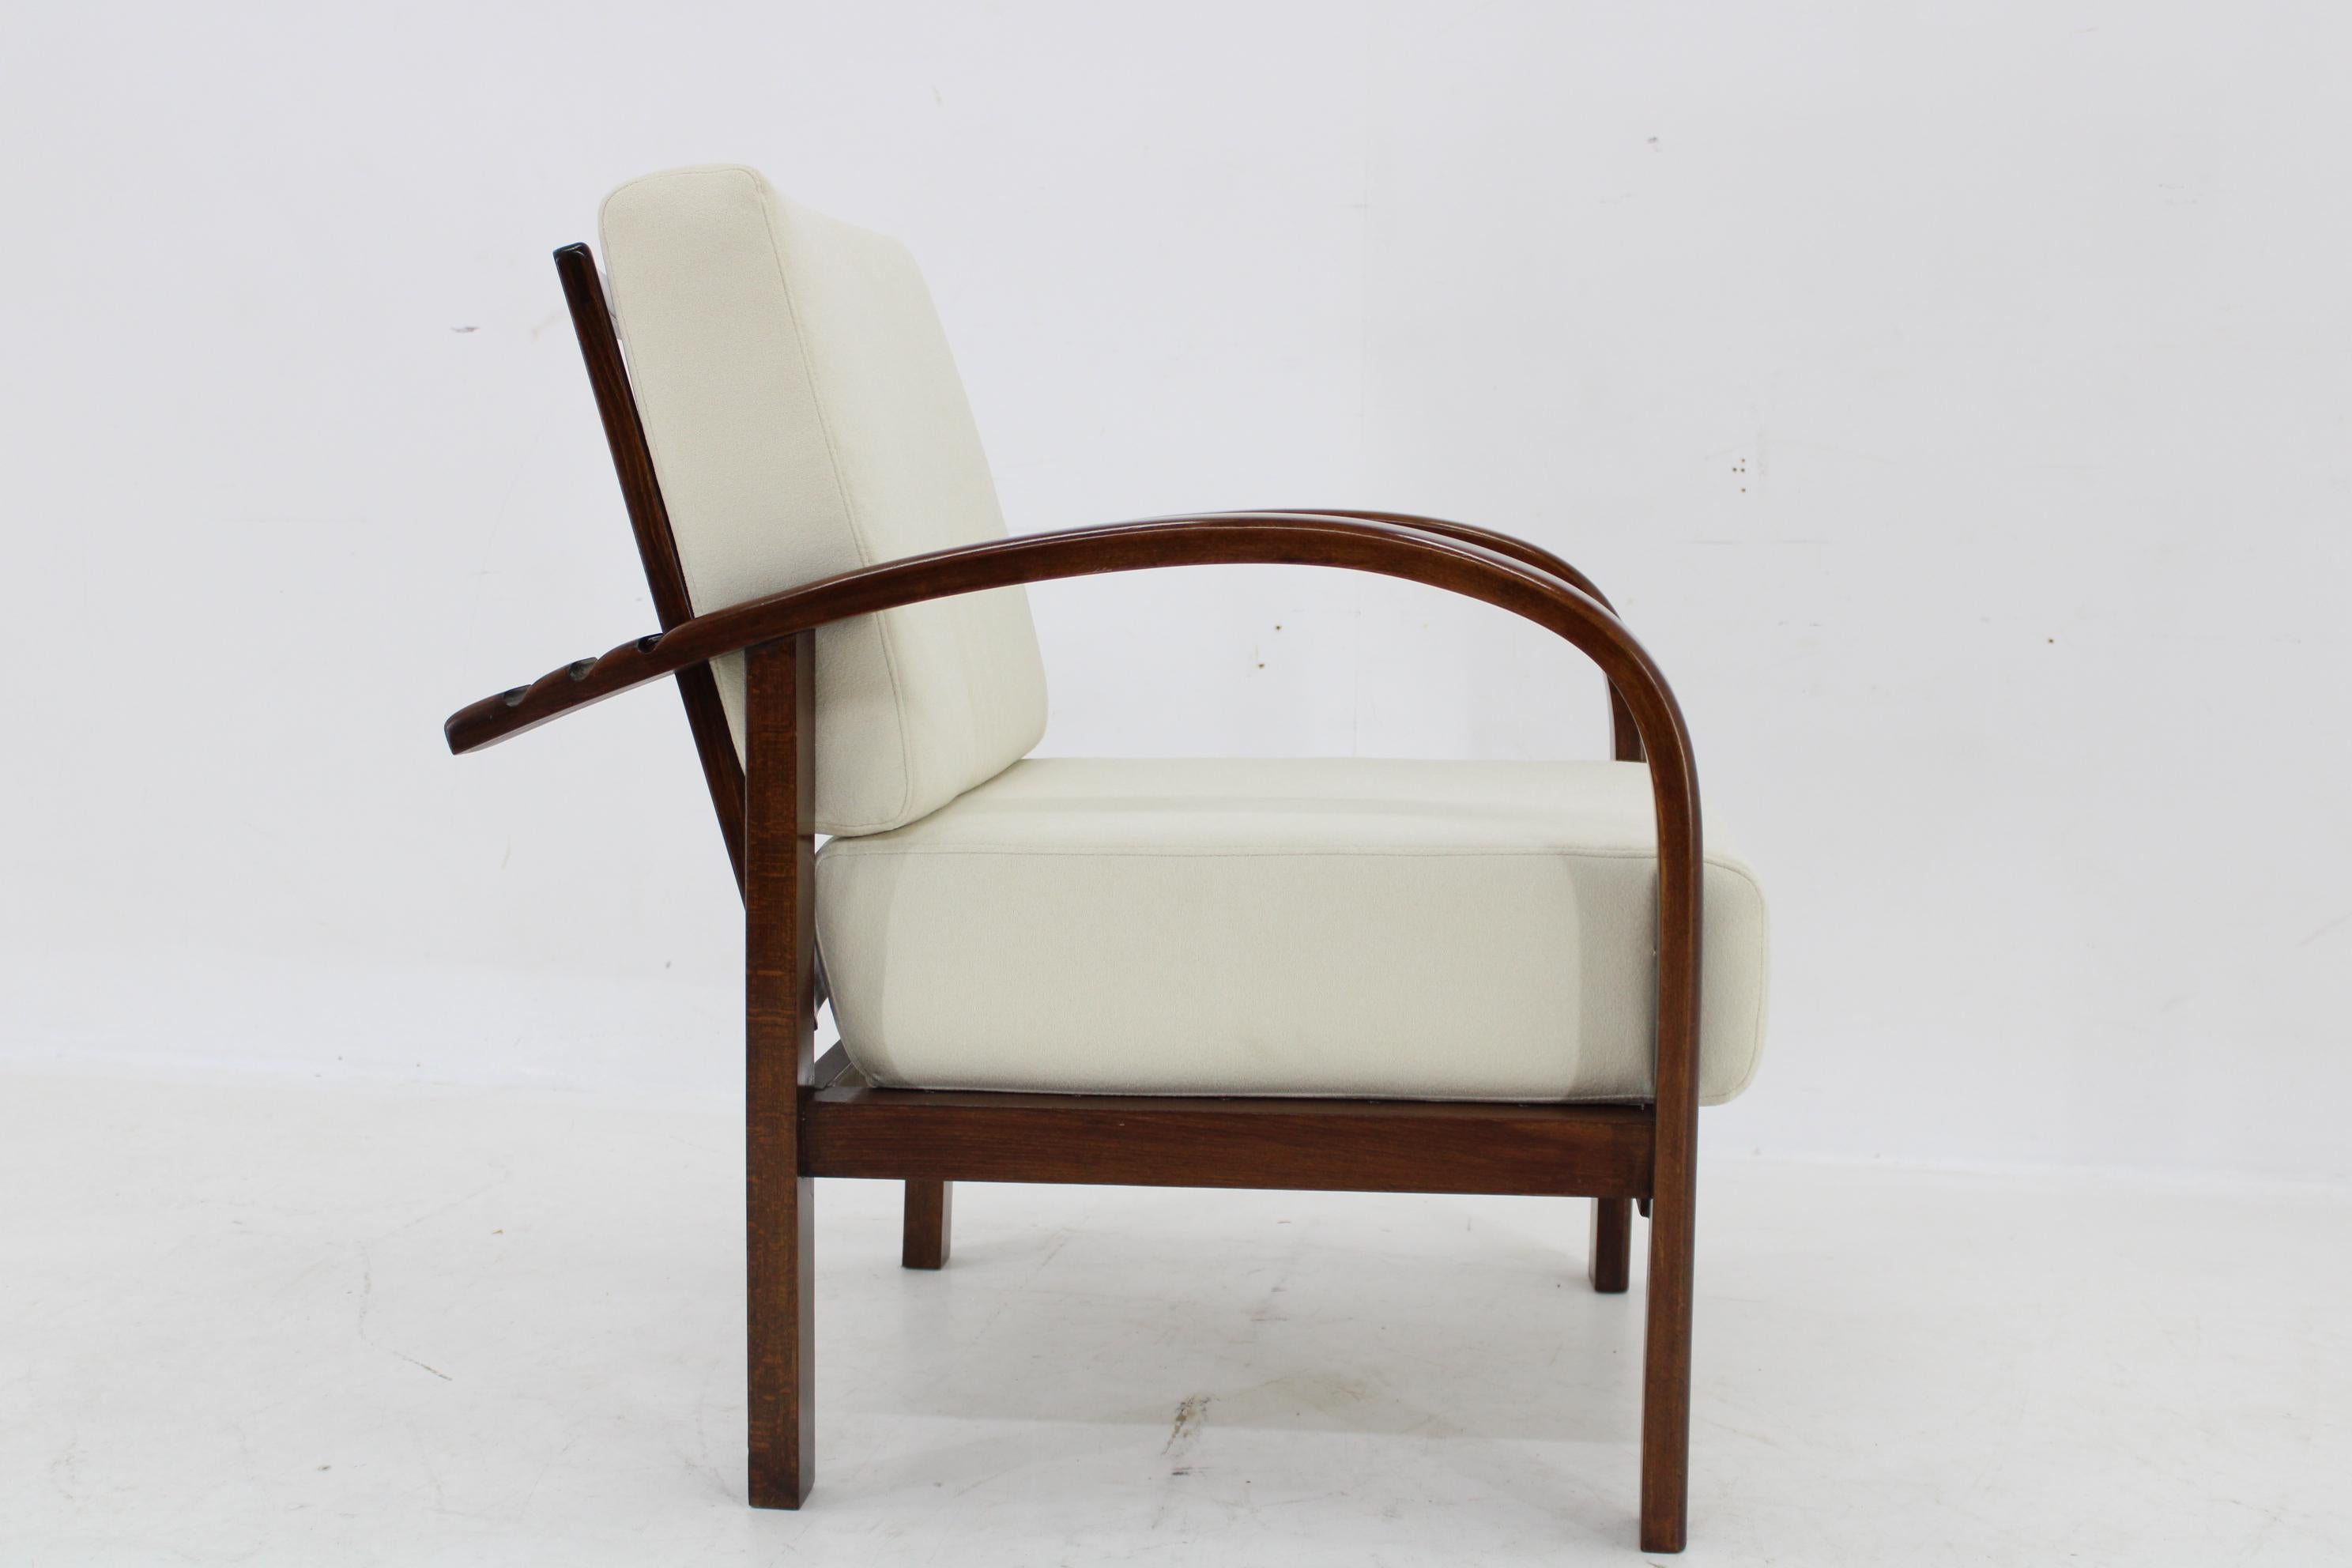 1930s Restored Art Deco Adjustable Armchair by Fischel, Czechoslovakia For Sale 7